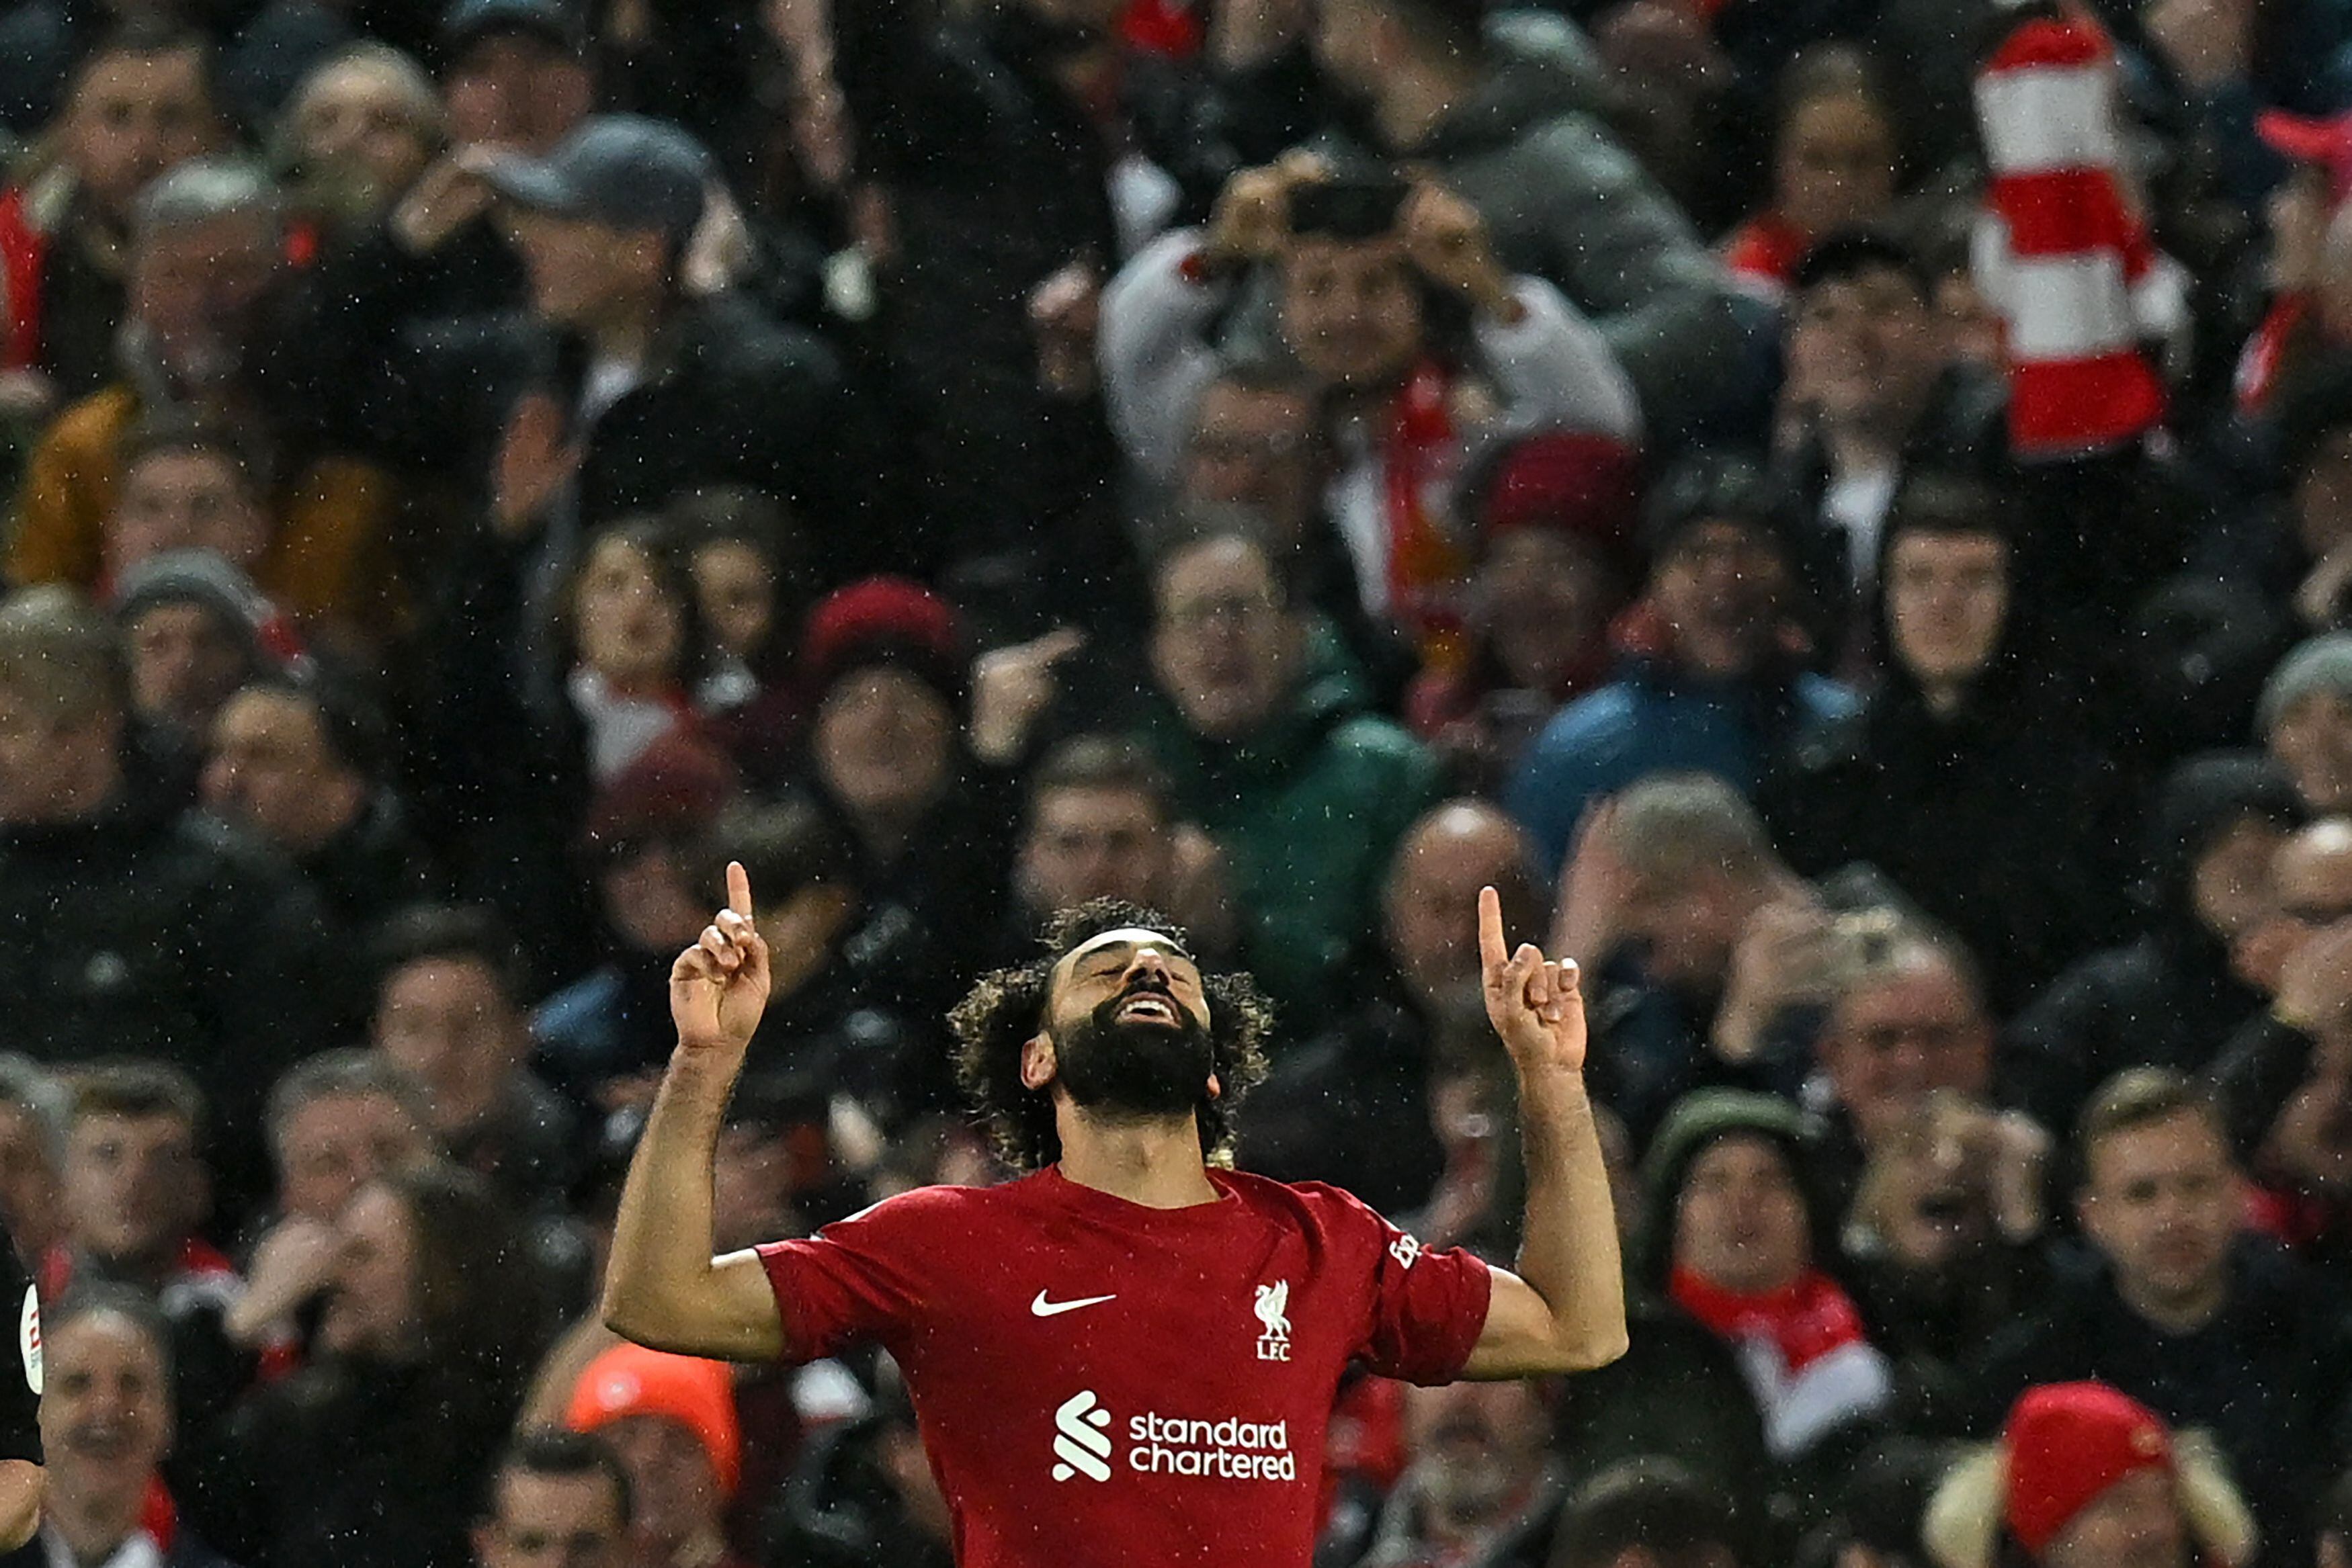 El egipio Mohamed Salah anotó un doblete en la goleada de 7-0 ante el Manchester United y llegó a 129 goles con el Liverpool, para convertirse en su goleador histórico.